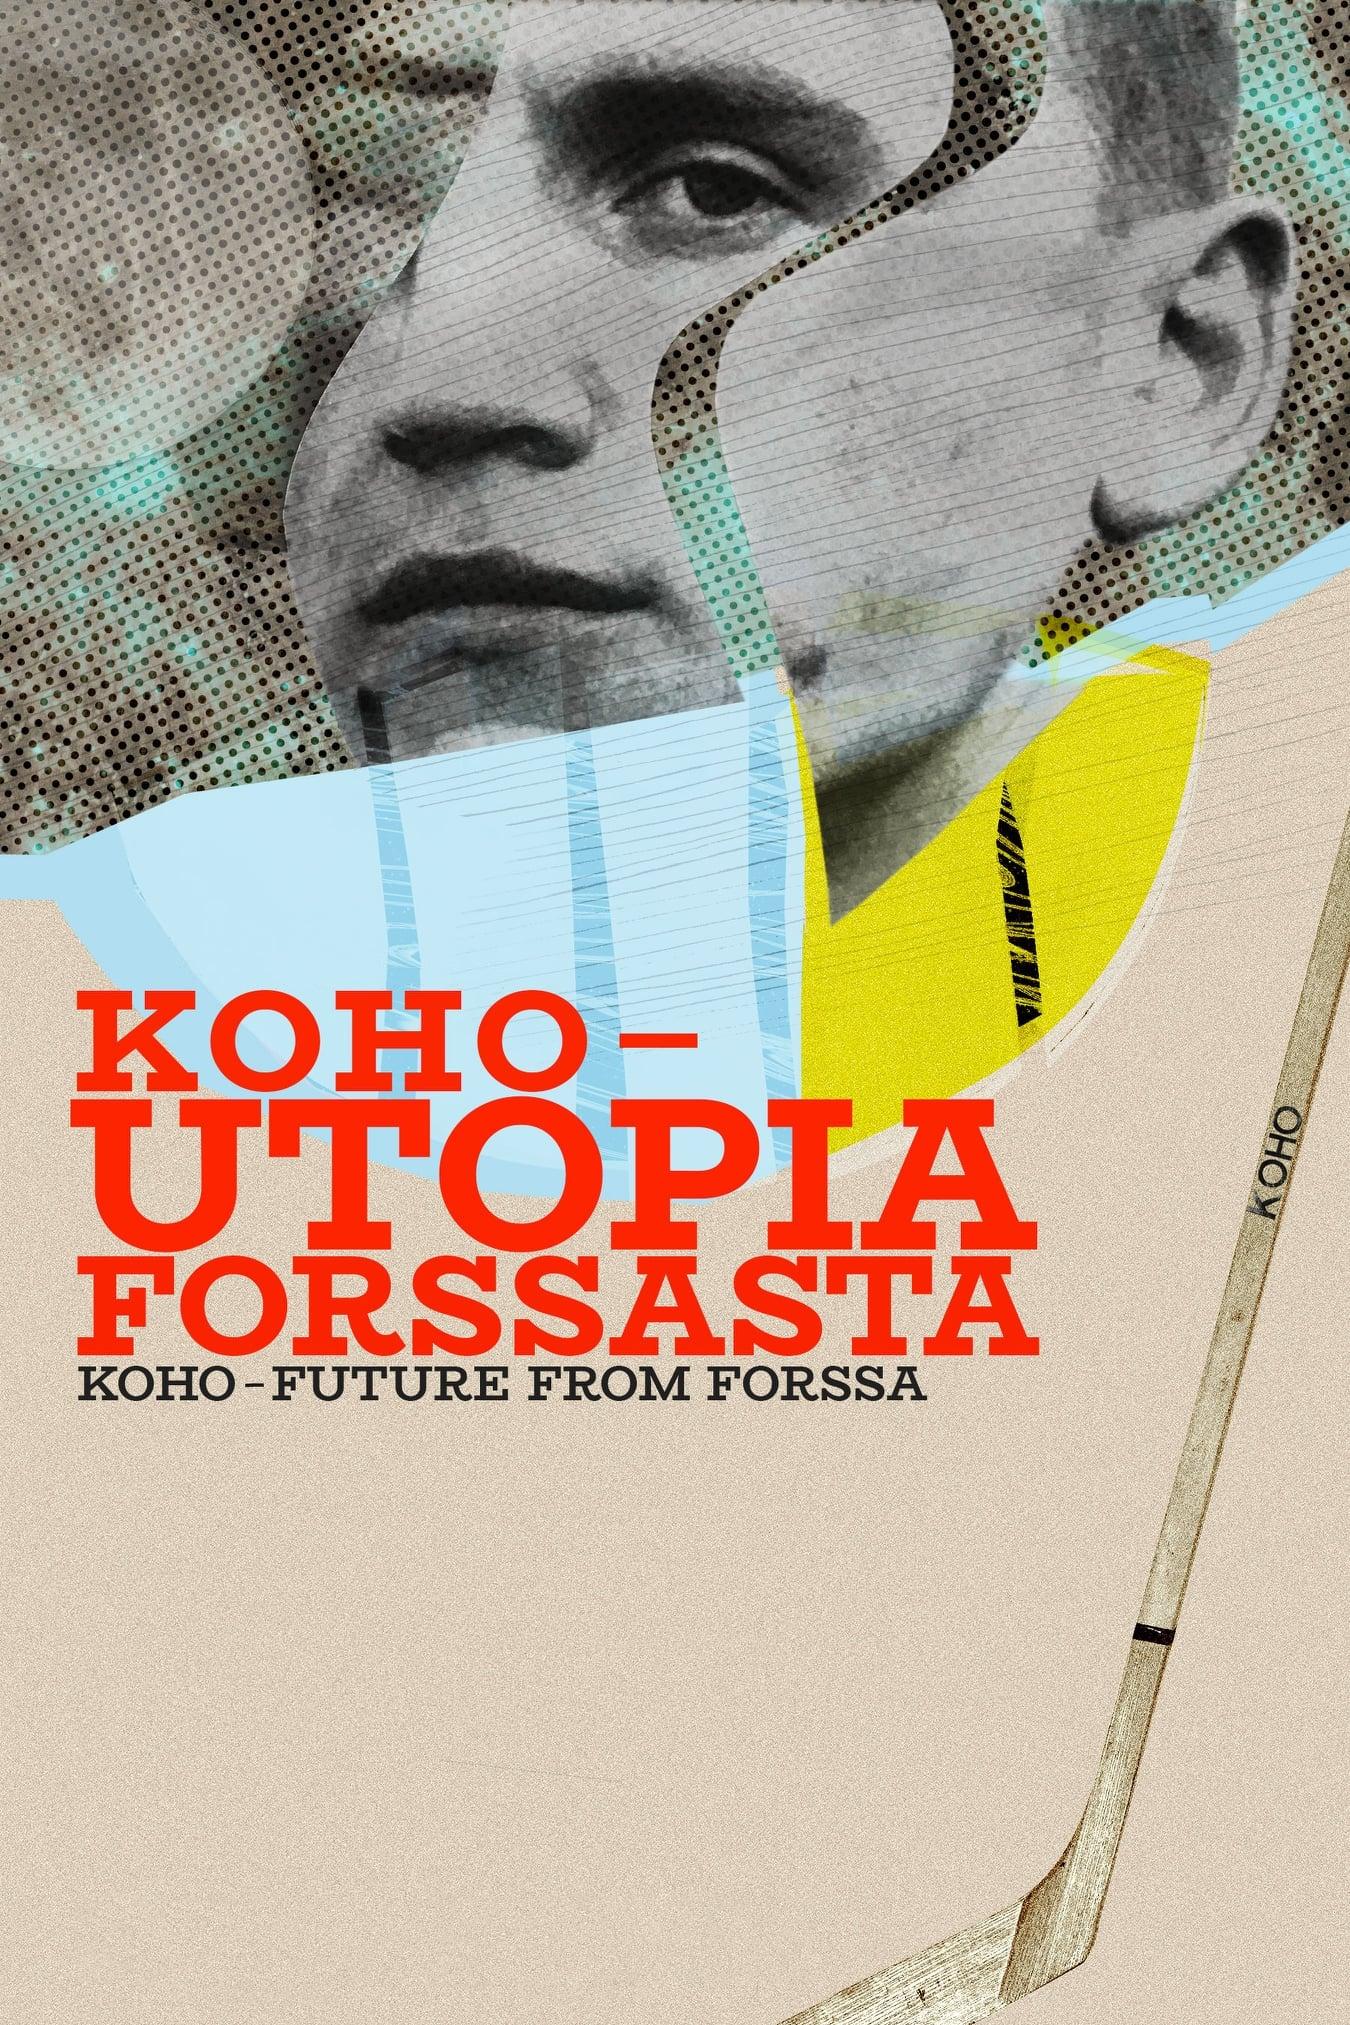 Koho – Utopia Forssasta poster